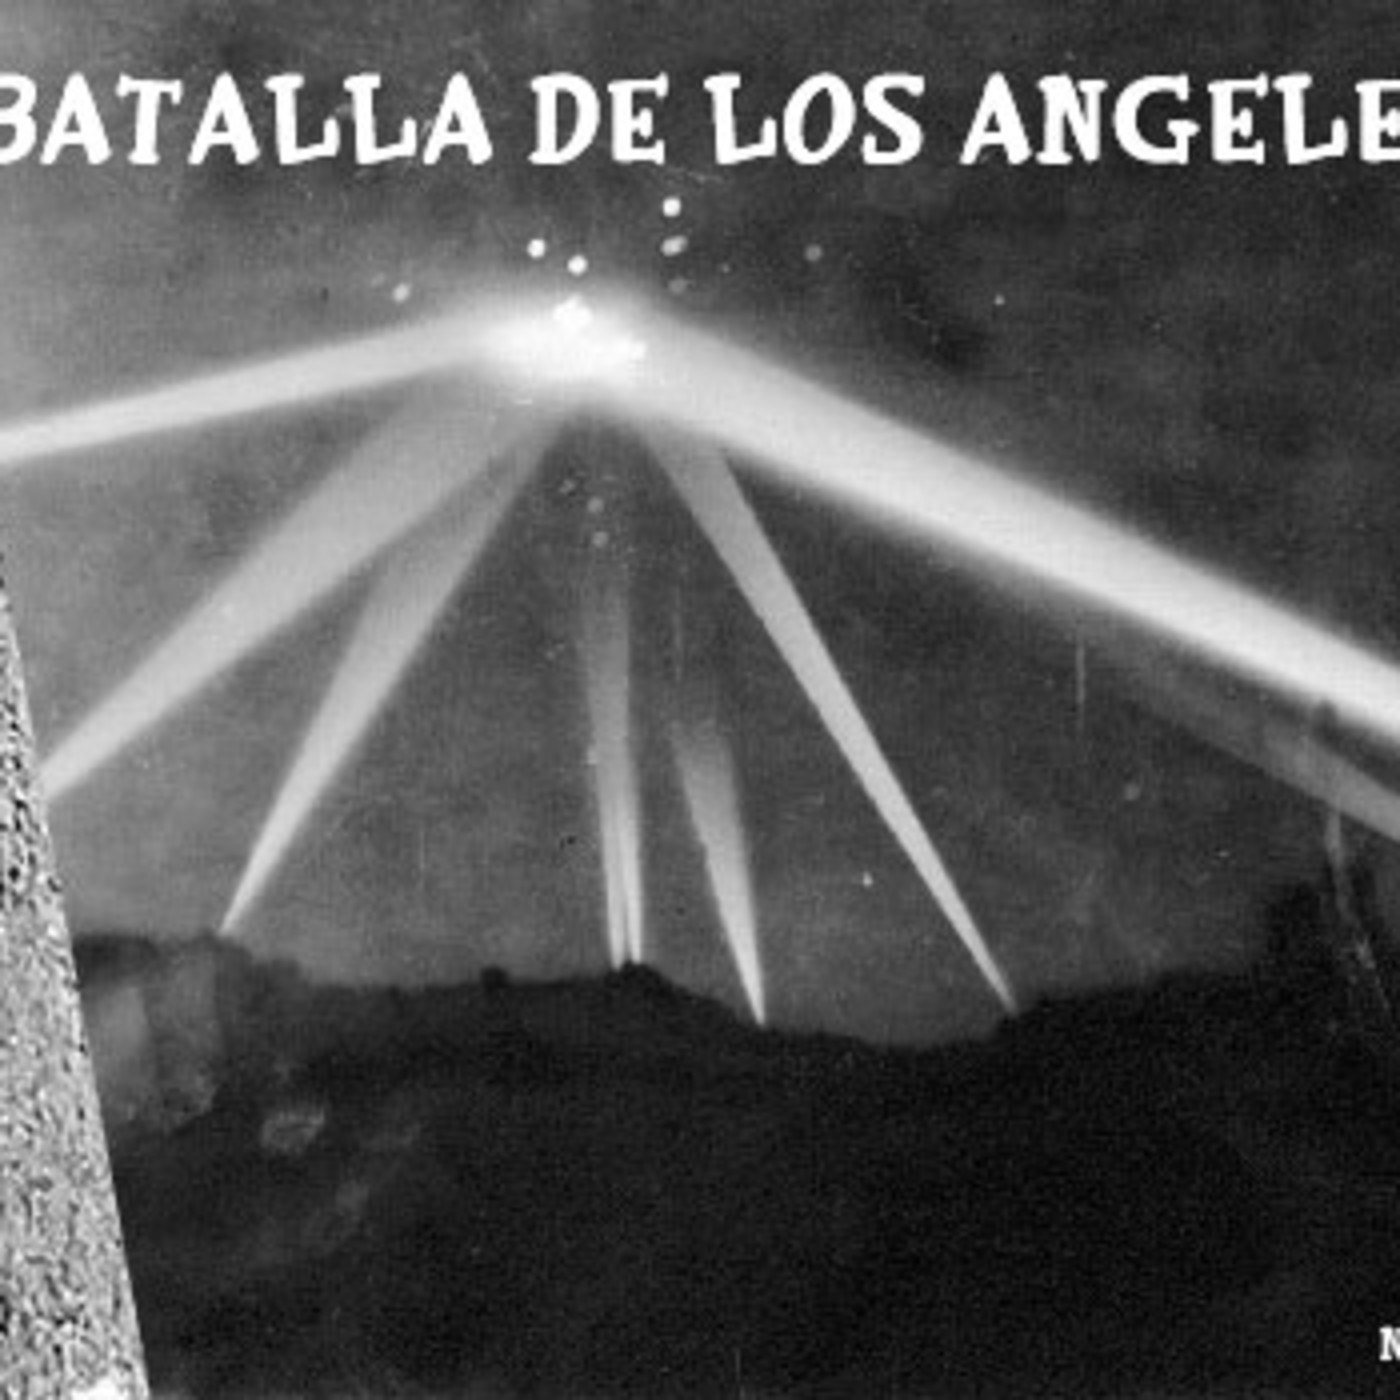 La Puerta Al Misterio - La Batalla de los Angeles